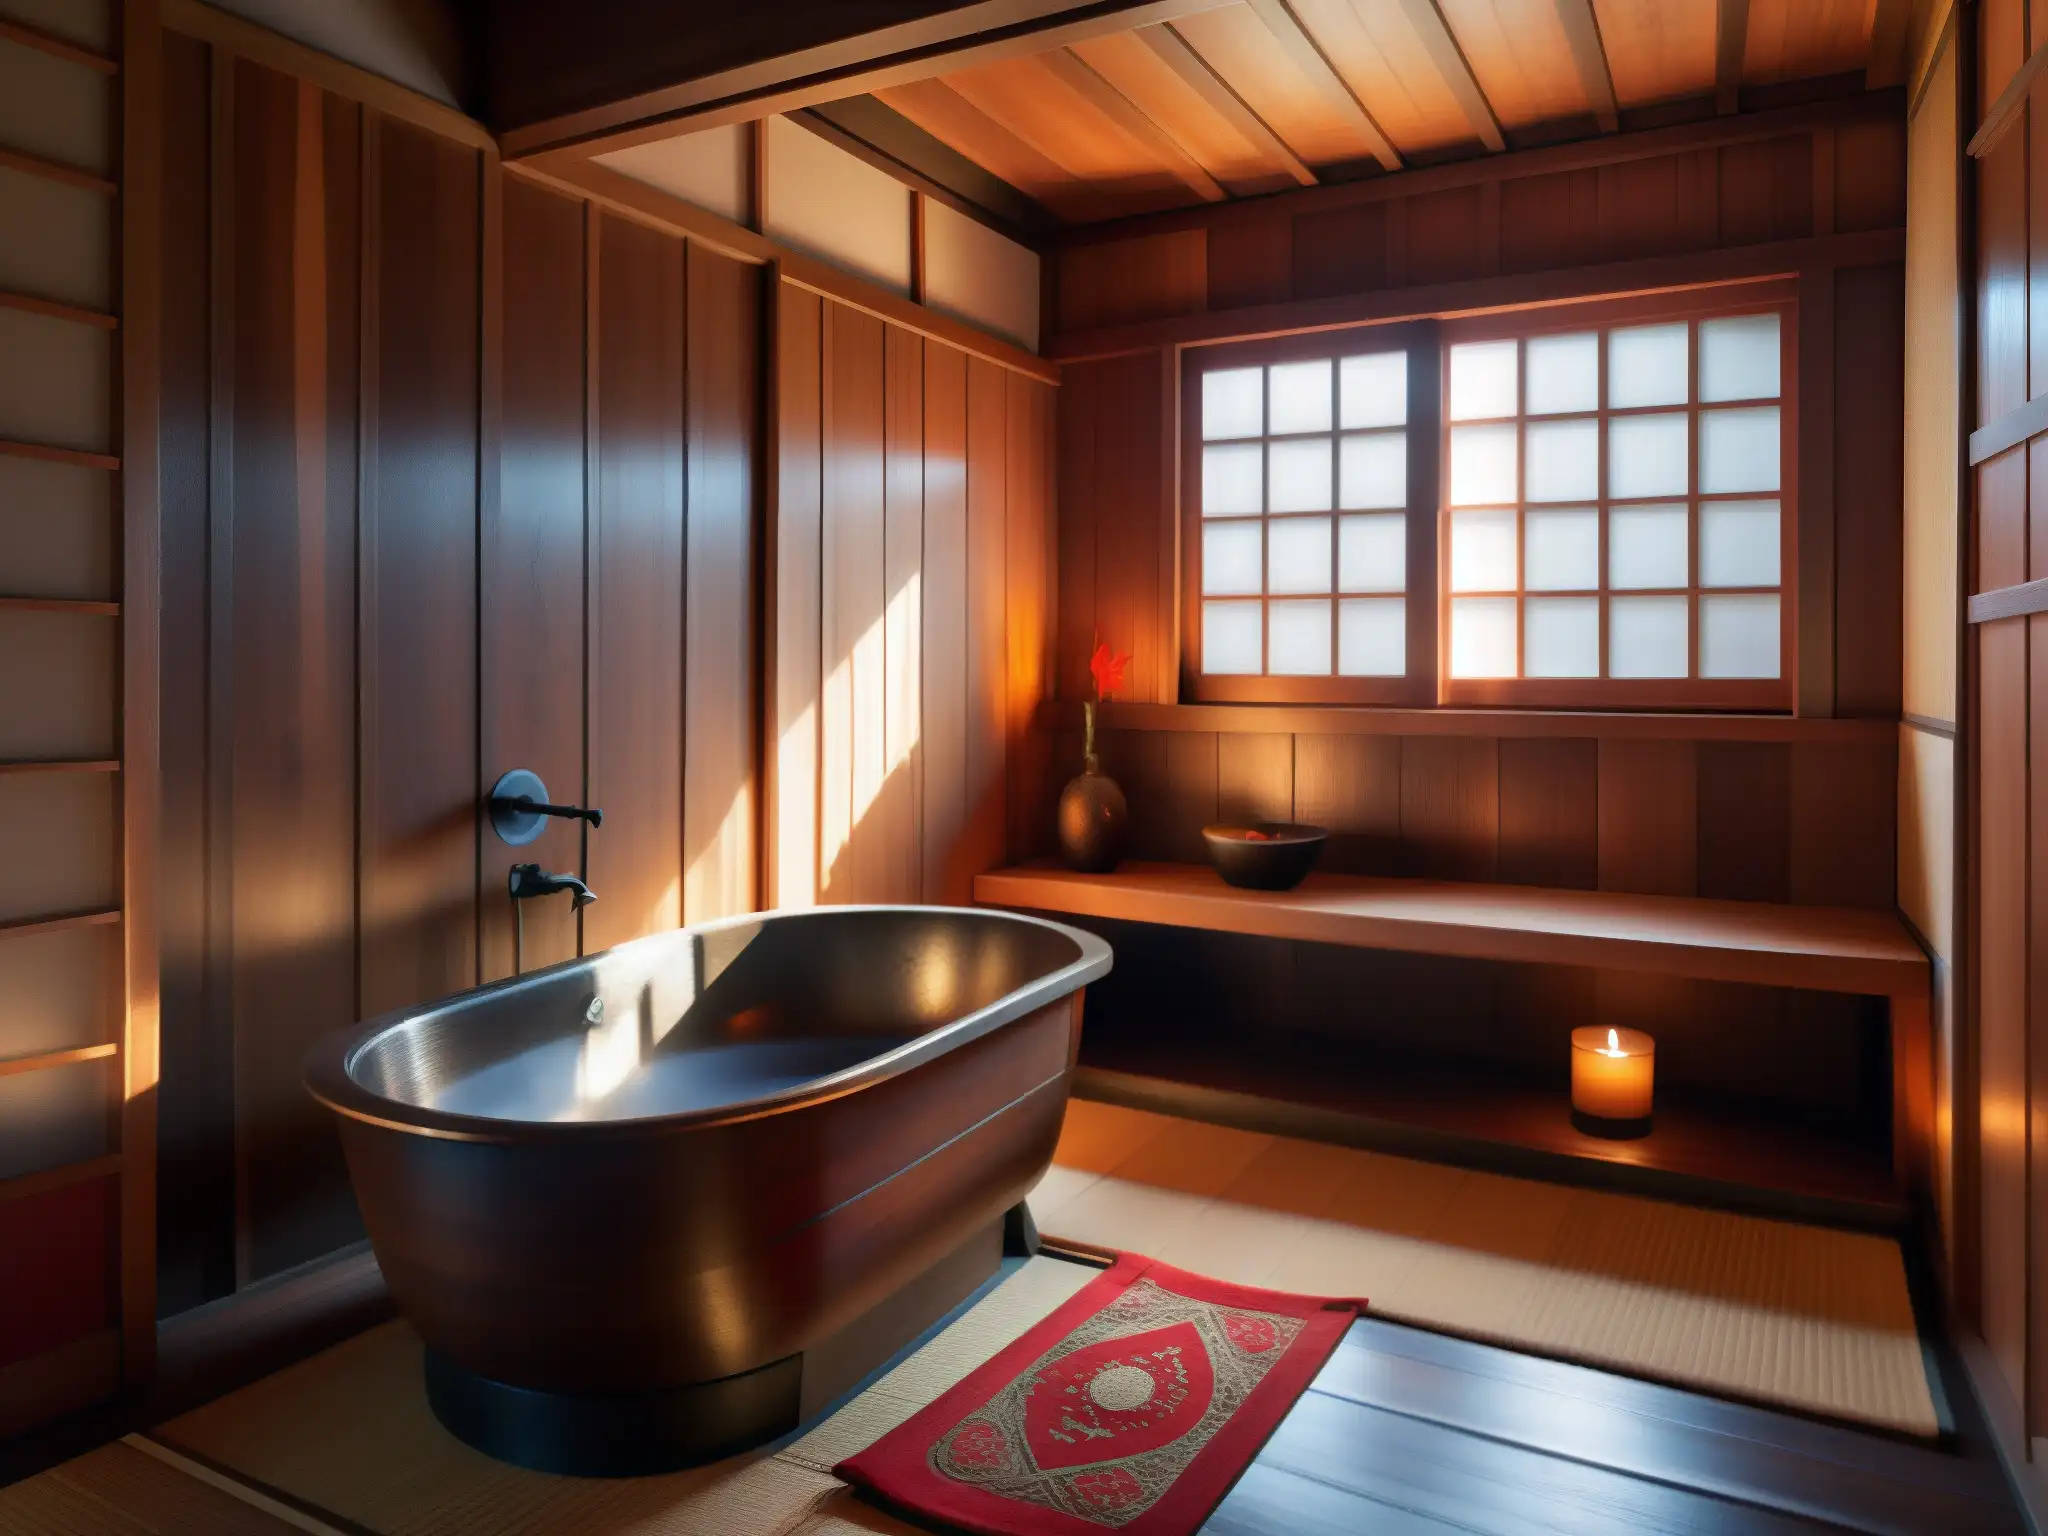 Un baño japonés tradicional con una bañera de madera profunda llena de agua caliente, iluminado por una suave luz cálida